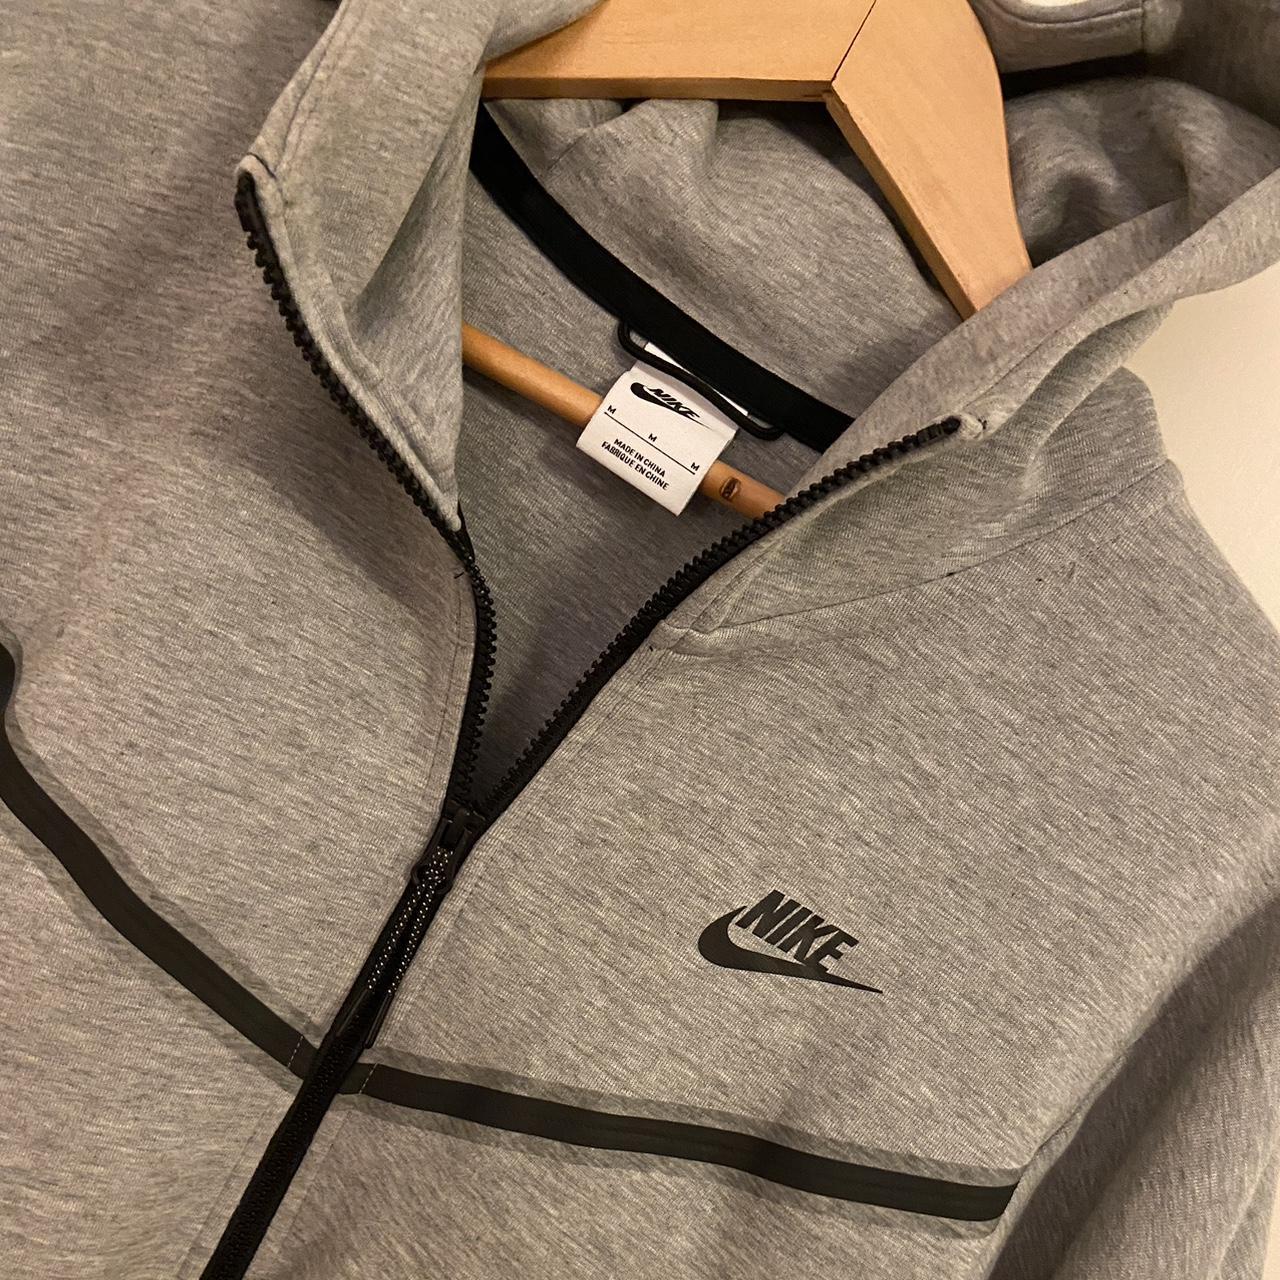 Nike Tech Fleece Jacket in Grey Size Medium Like... - Depop